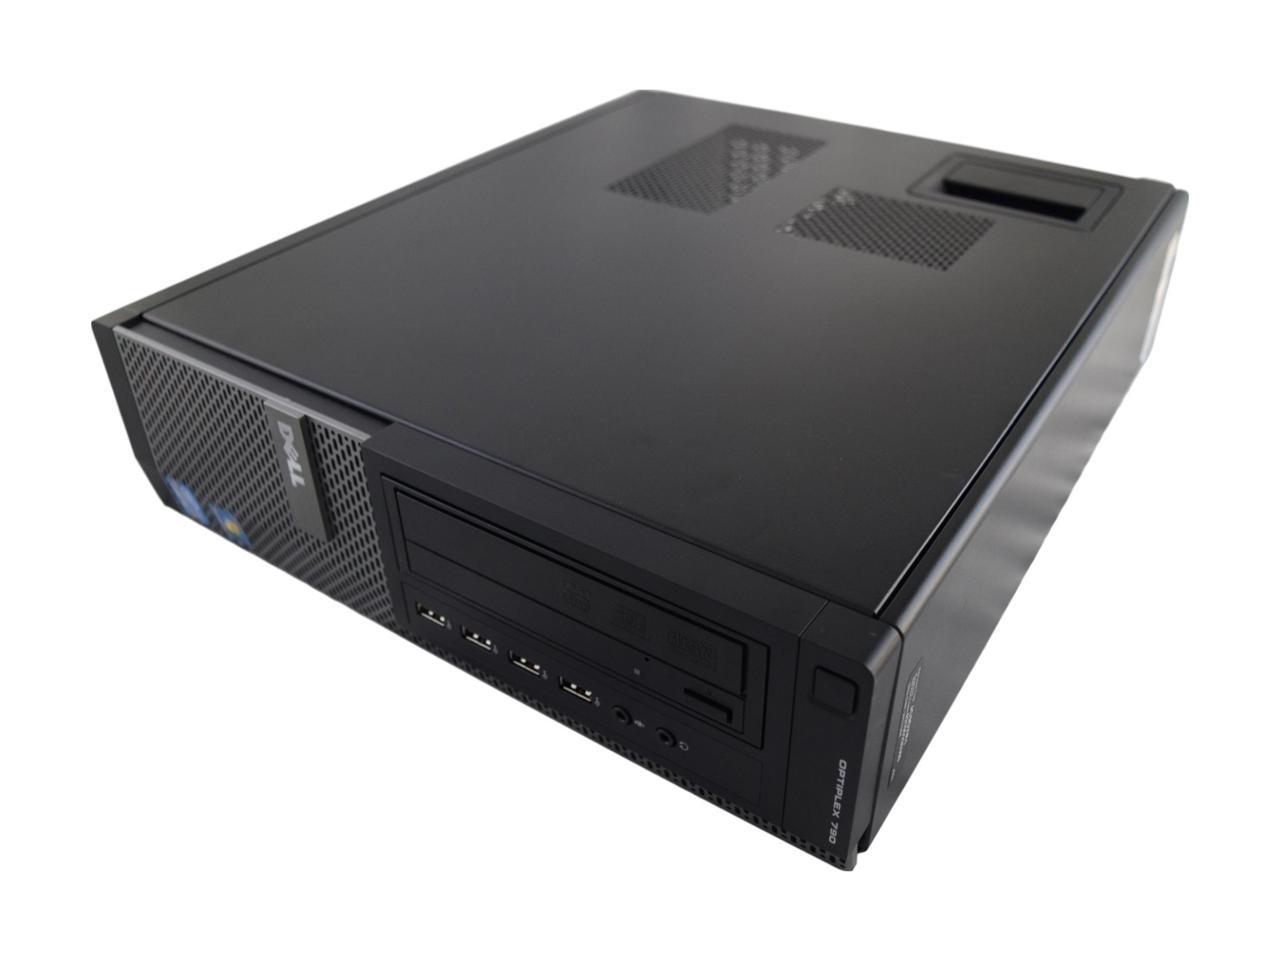 Dell Optiplex 790 DT PC - Intel Core i5 2400 2nd Gen 3.1 GHz 8GB 500GB HDD DVD-RW Windows 10 Pro 64-Bit